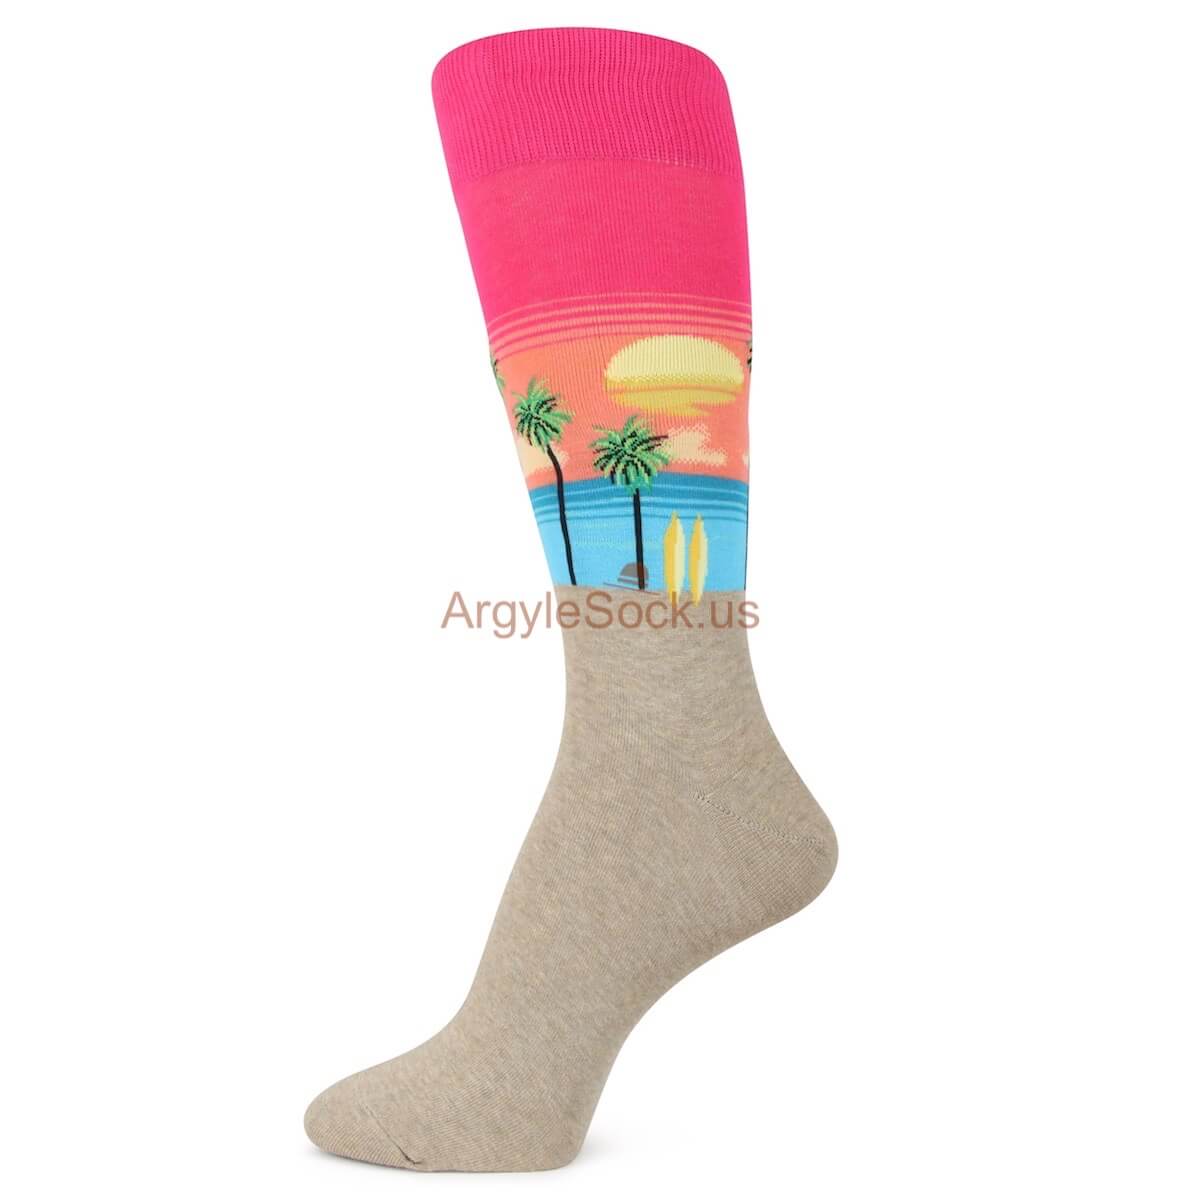 Sunset at the Beach Themed Socks for Men